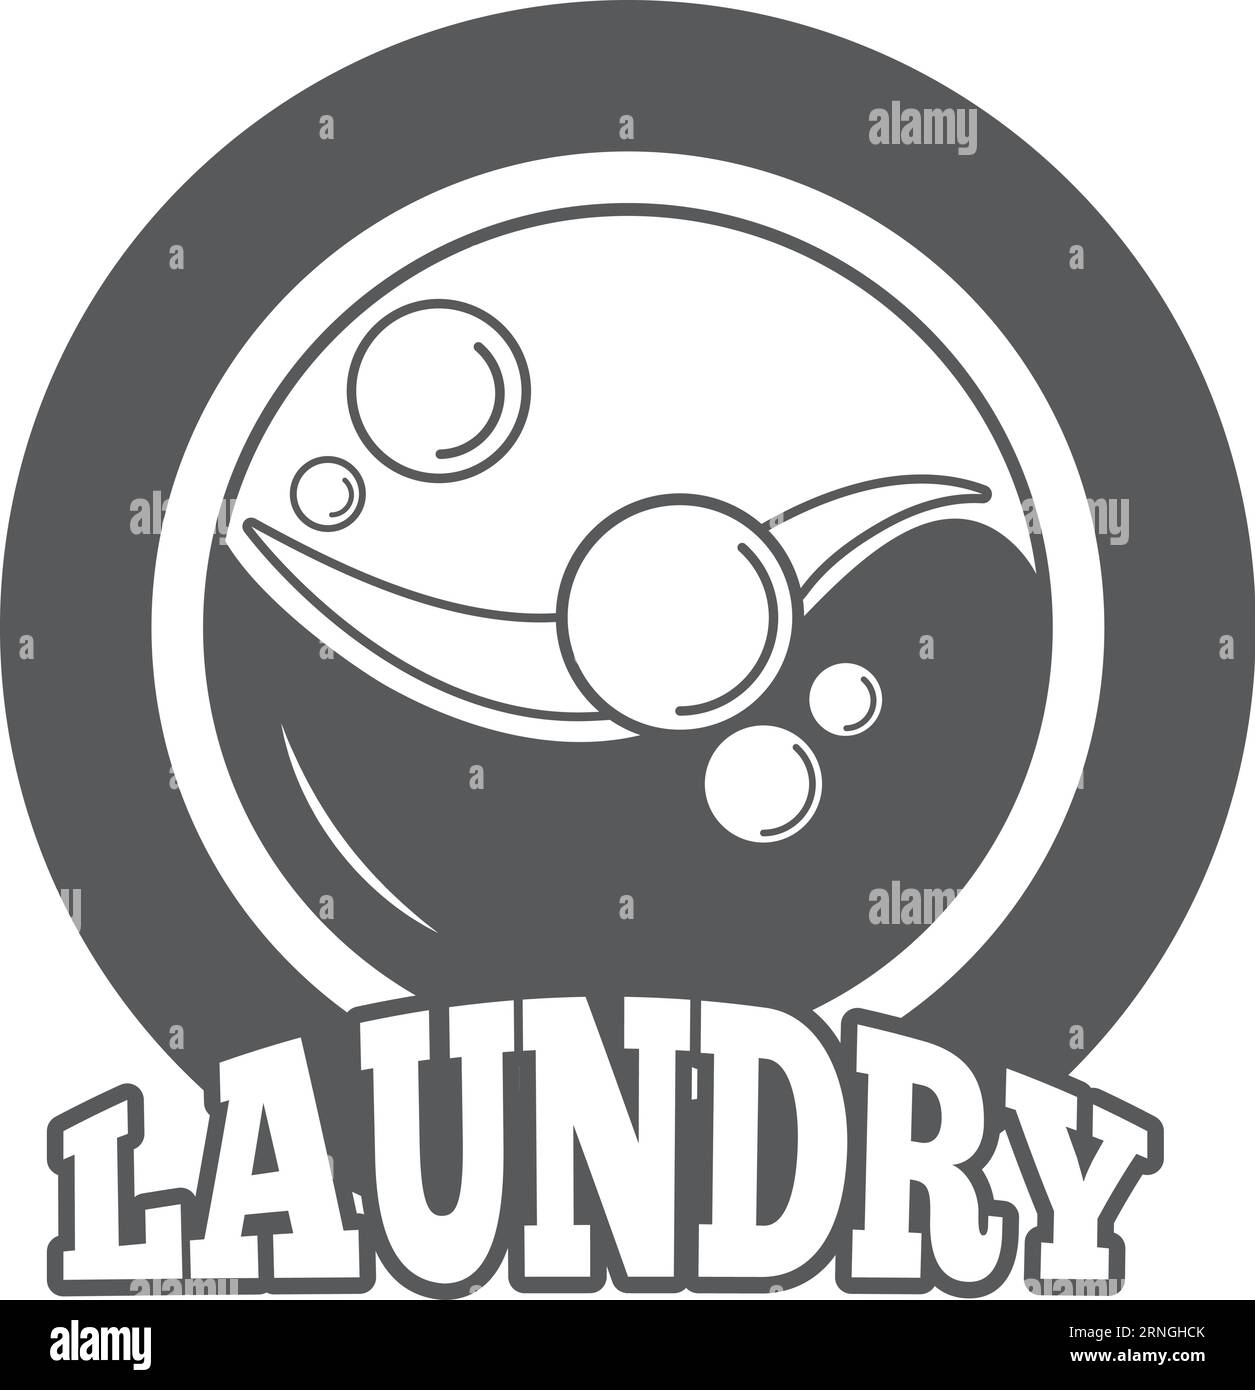 Laundry black emblem. Laundromat logo. Clothes washing Stock Vector